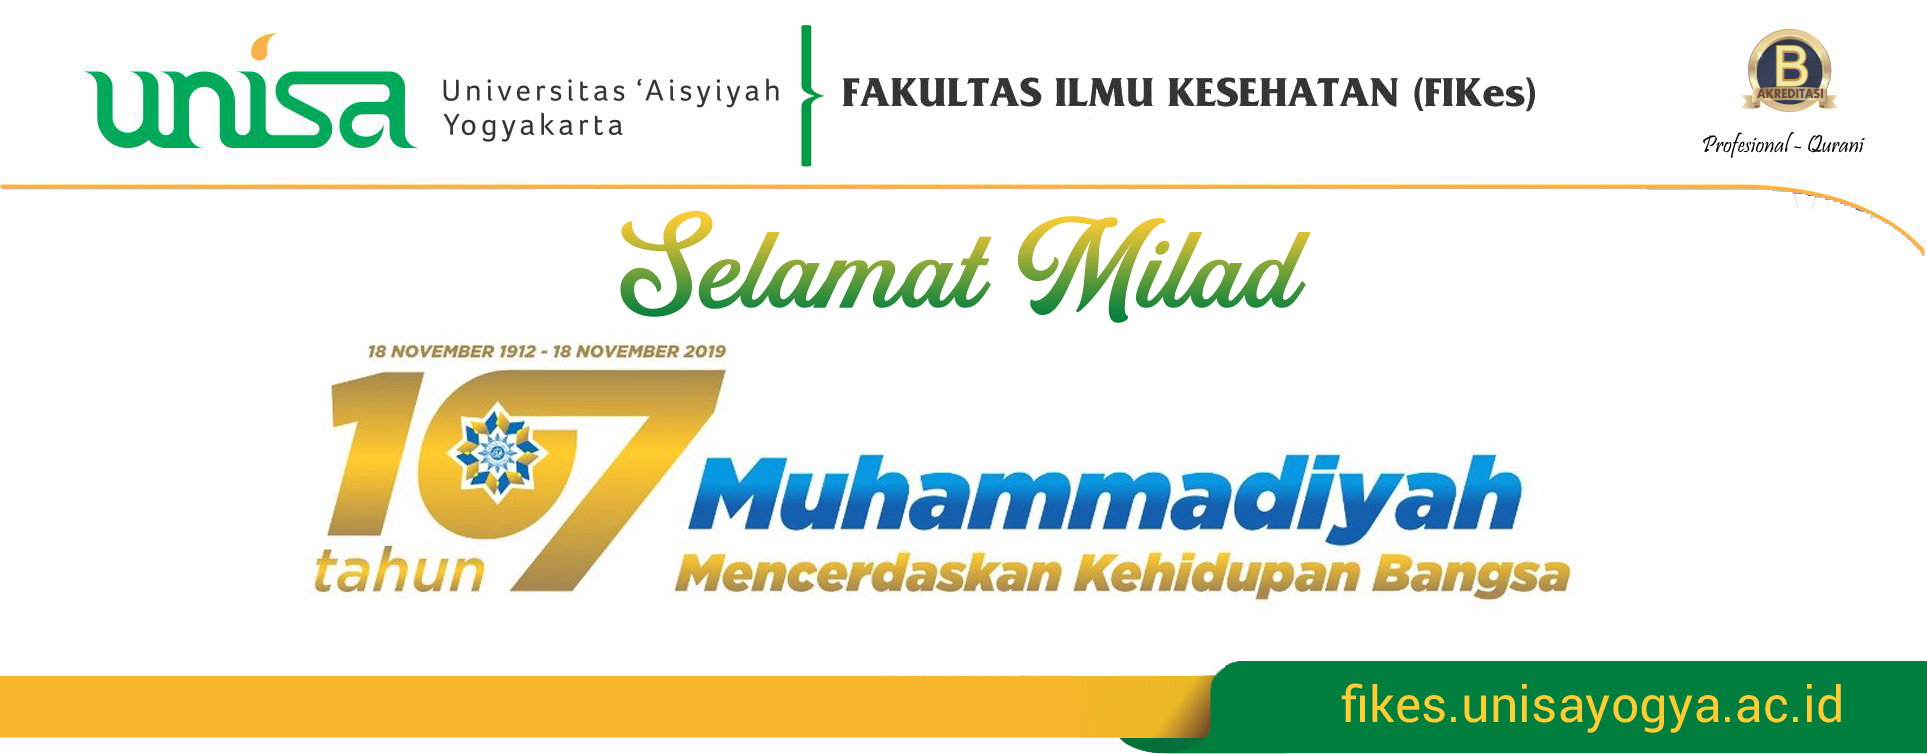 Selamat Milad 107 Tahun Muhammadiyah